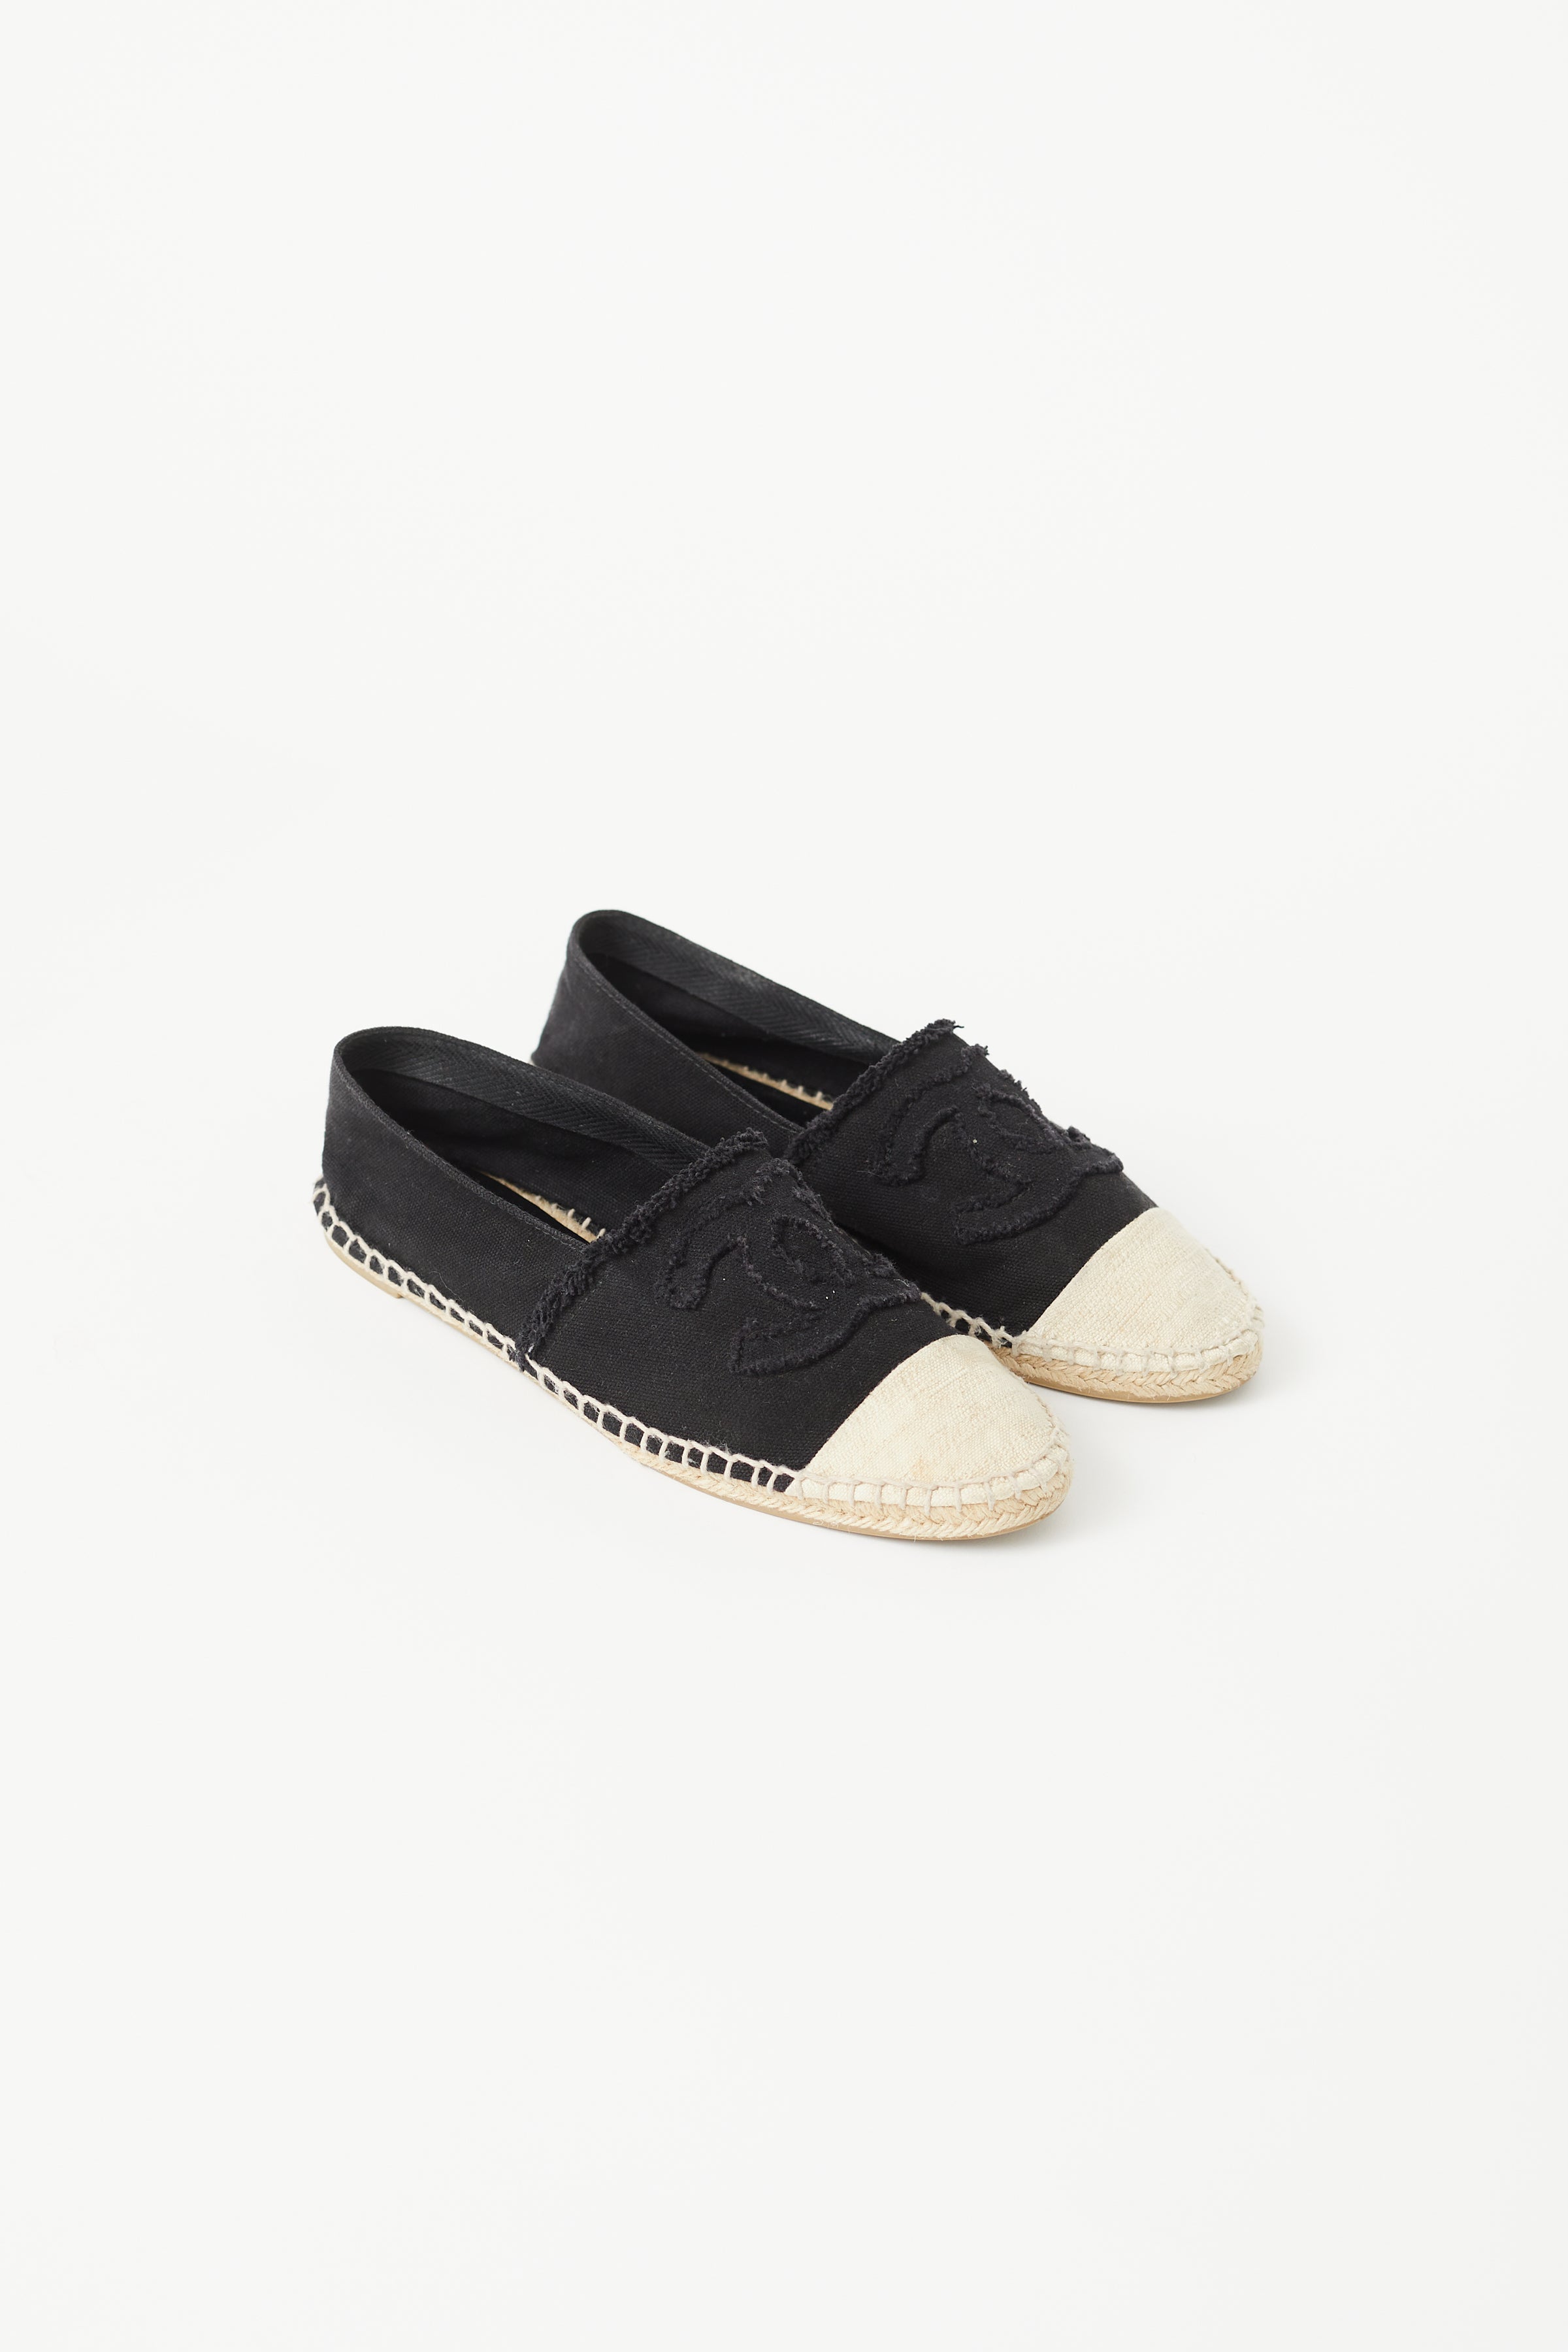 Chanel Black Tweed CC Platform Slide Sandals Size 35 Chanel